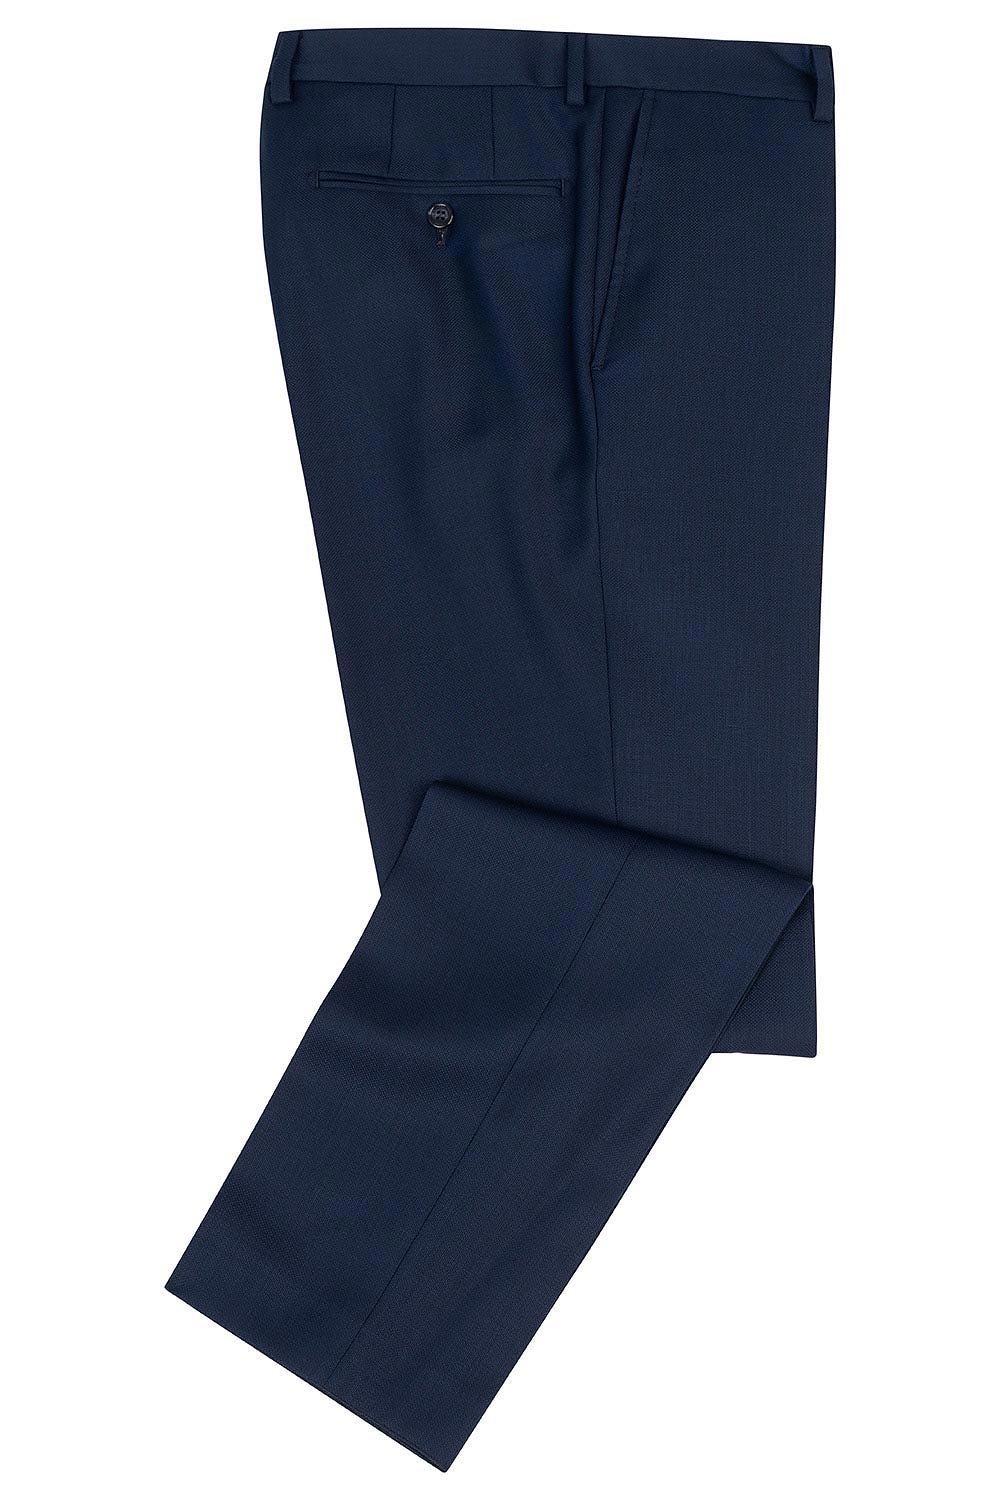 Pantaloni superslim riccof albastri uni 1